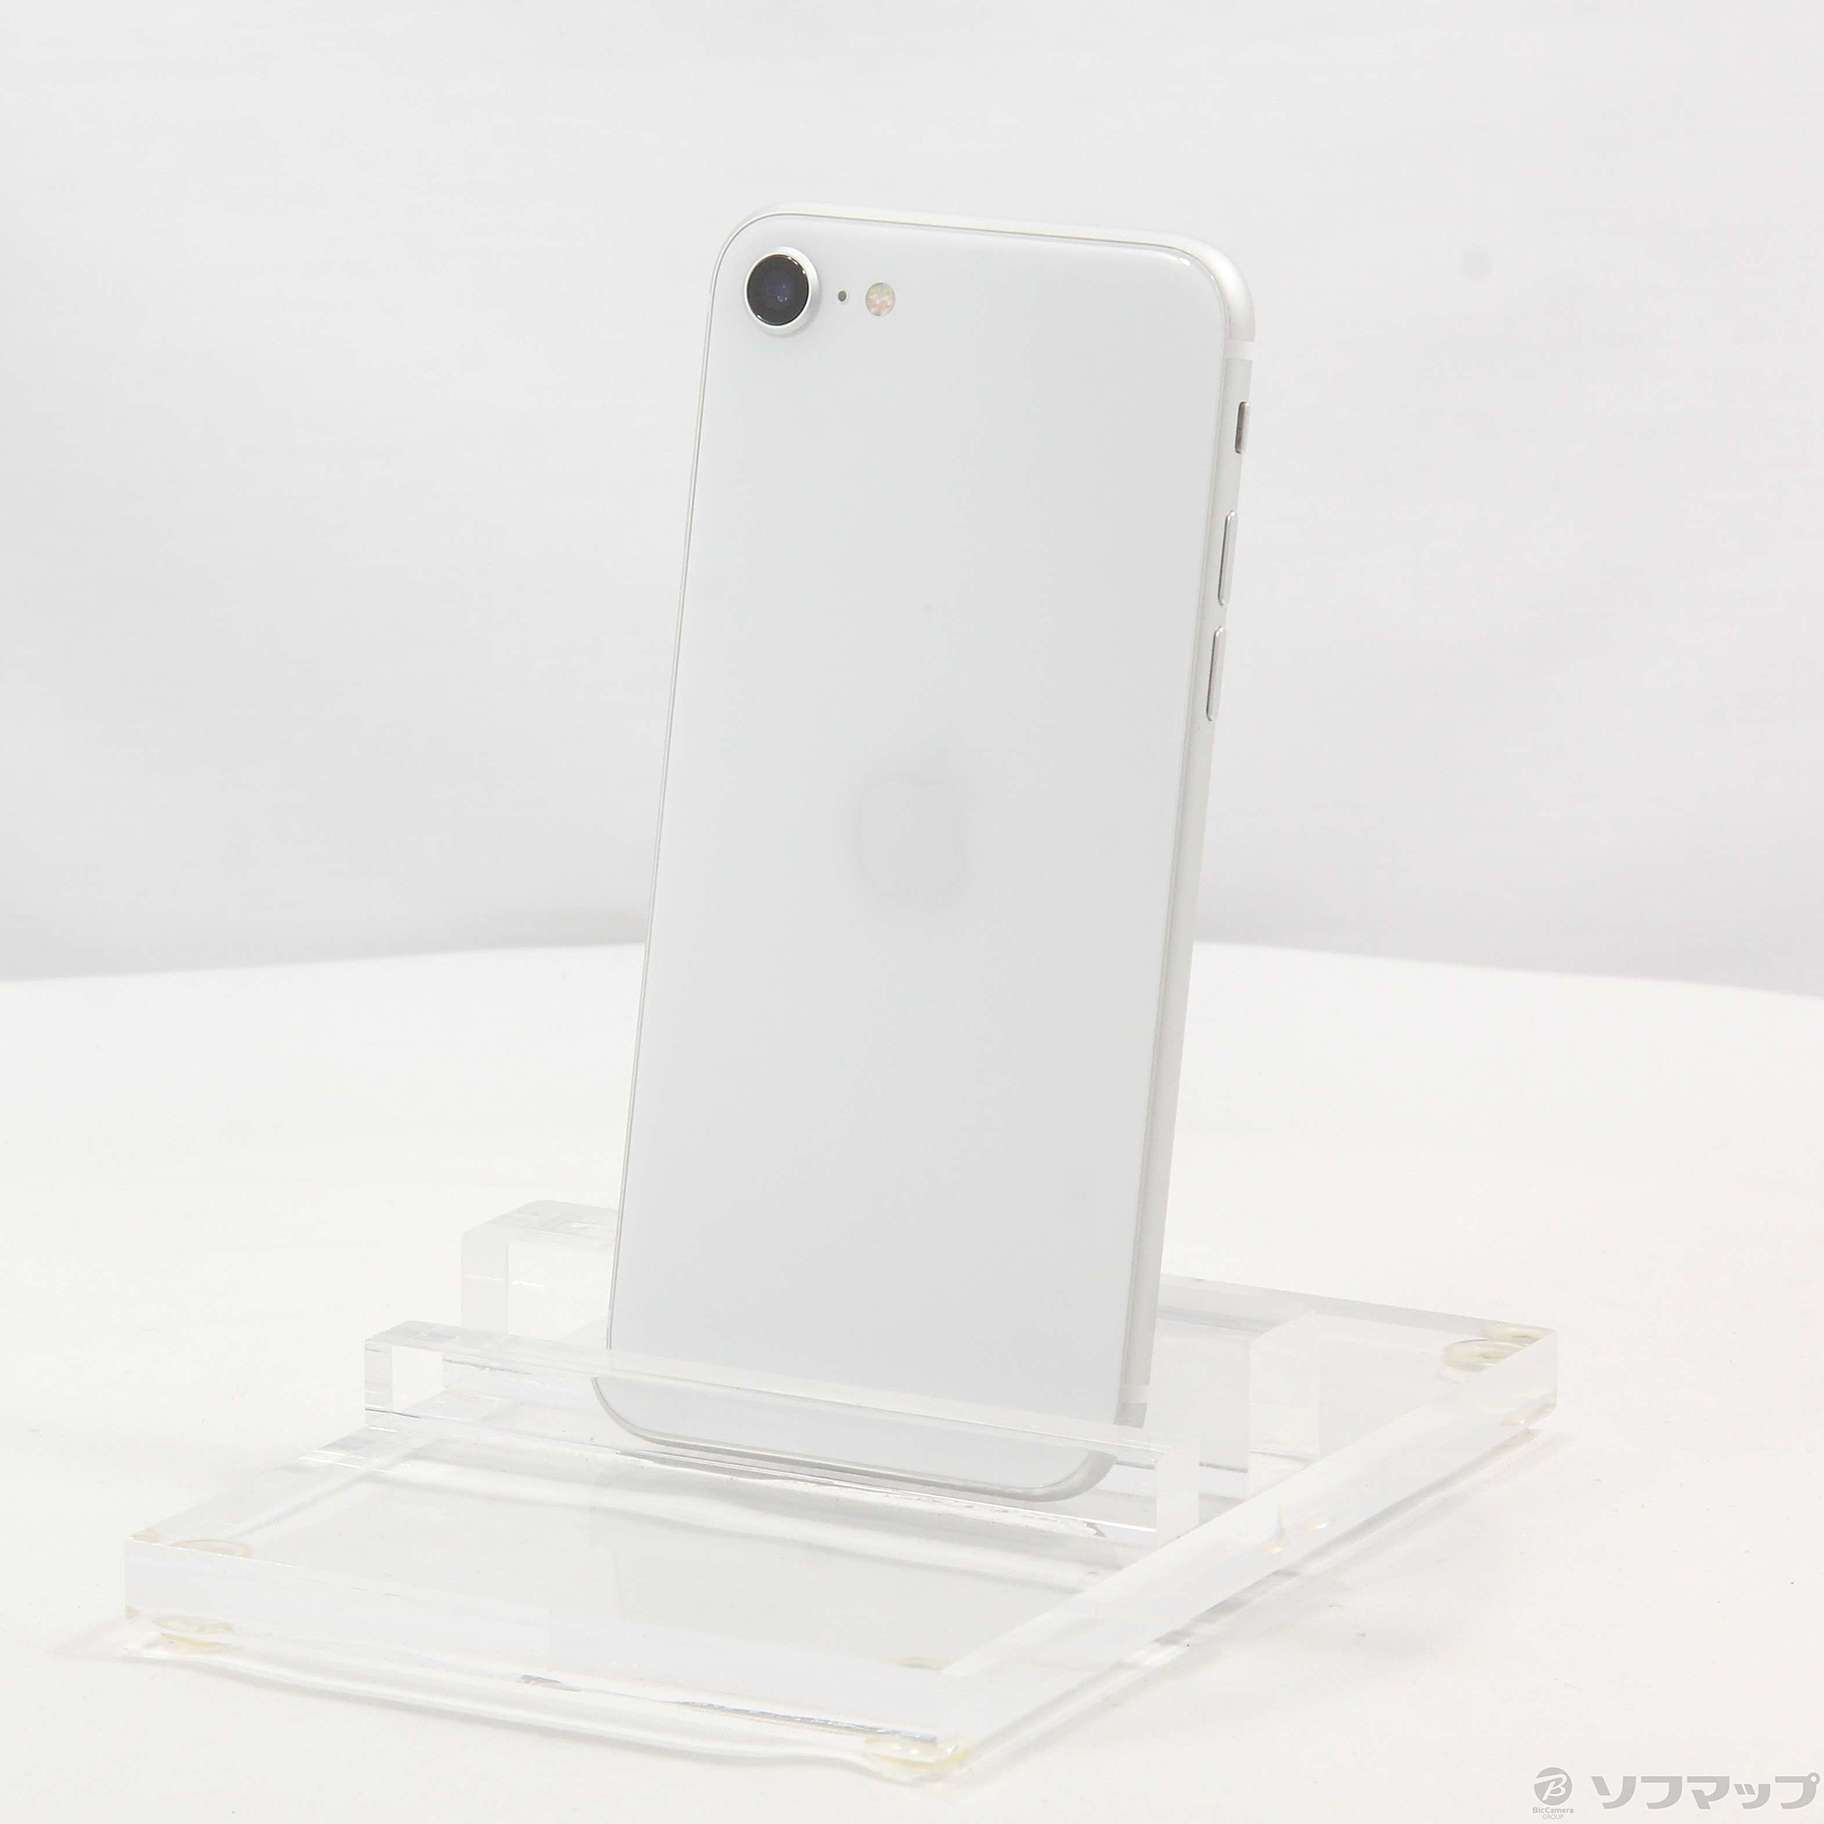 アップル iPhoneSE 第2世代 64GB ホワイト